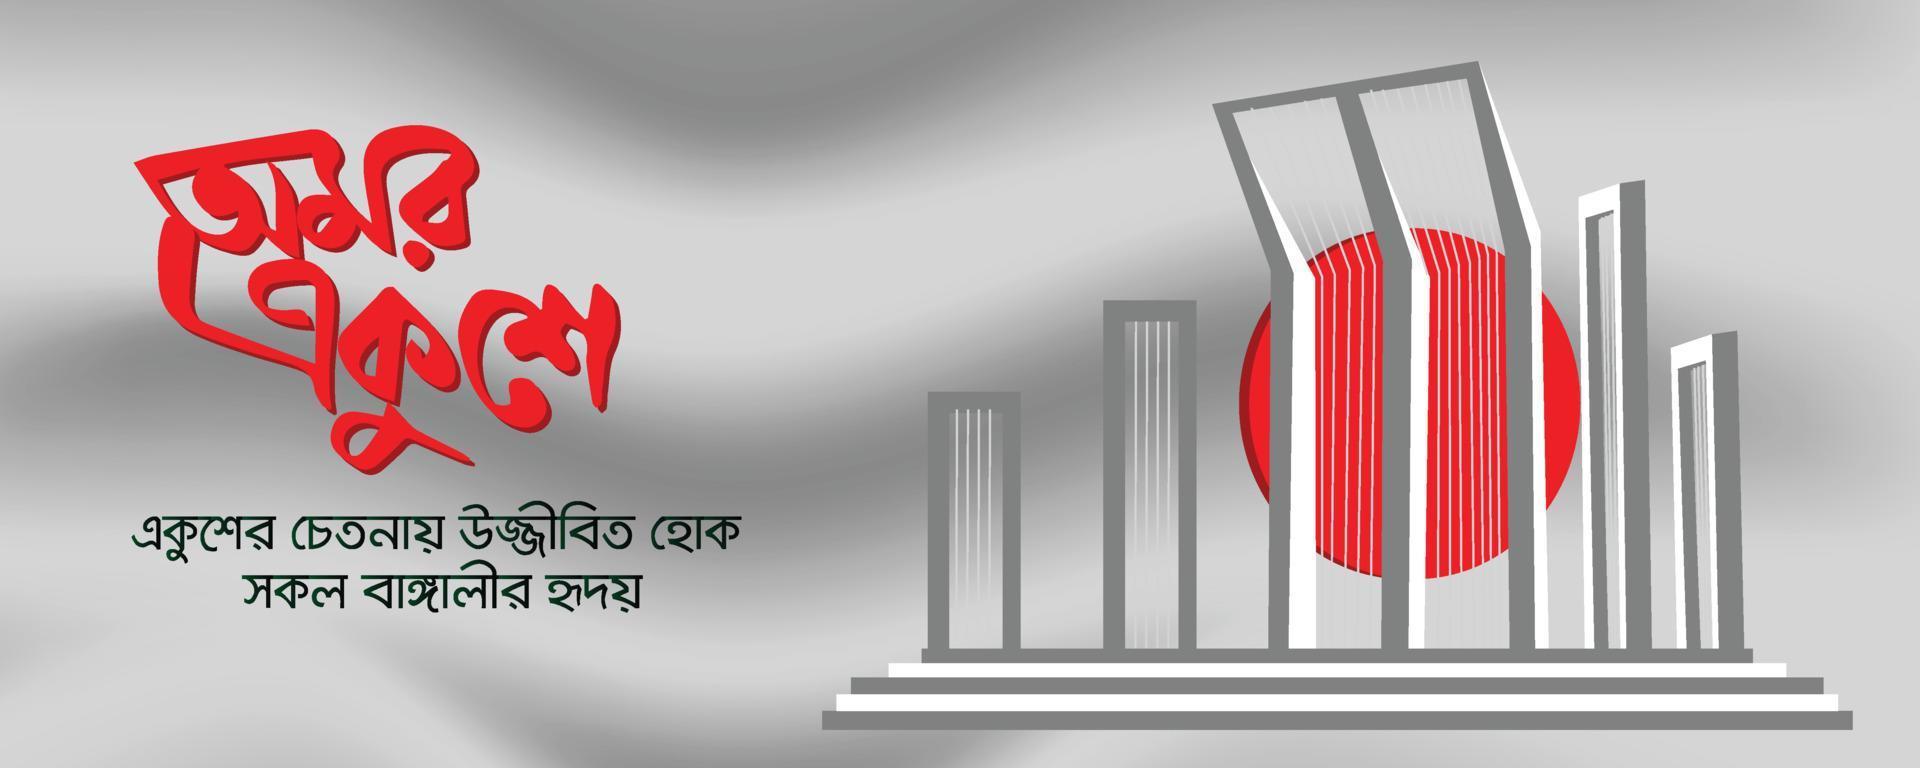 tipografia 21 de fevereiro, dia internacional da língua materna em bangladesh, 21 de fevereiro design de banner vetor